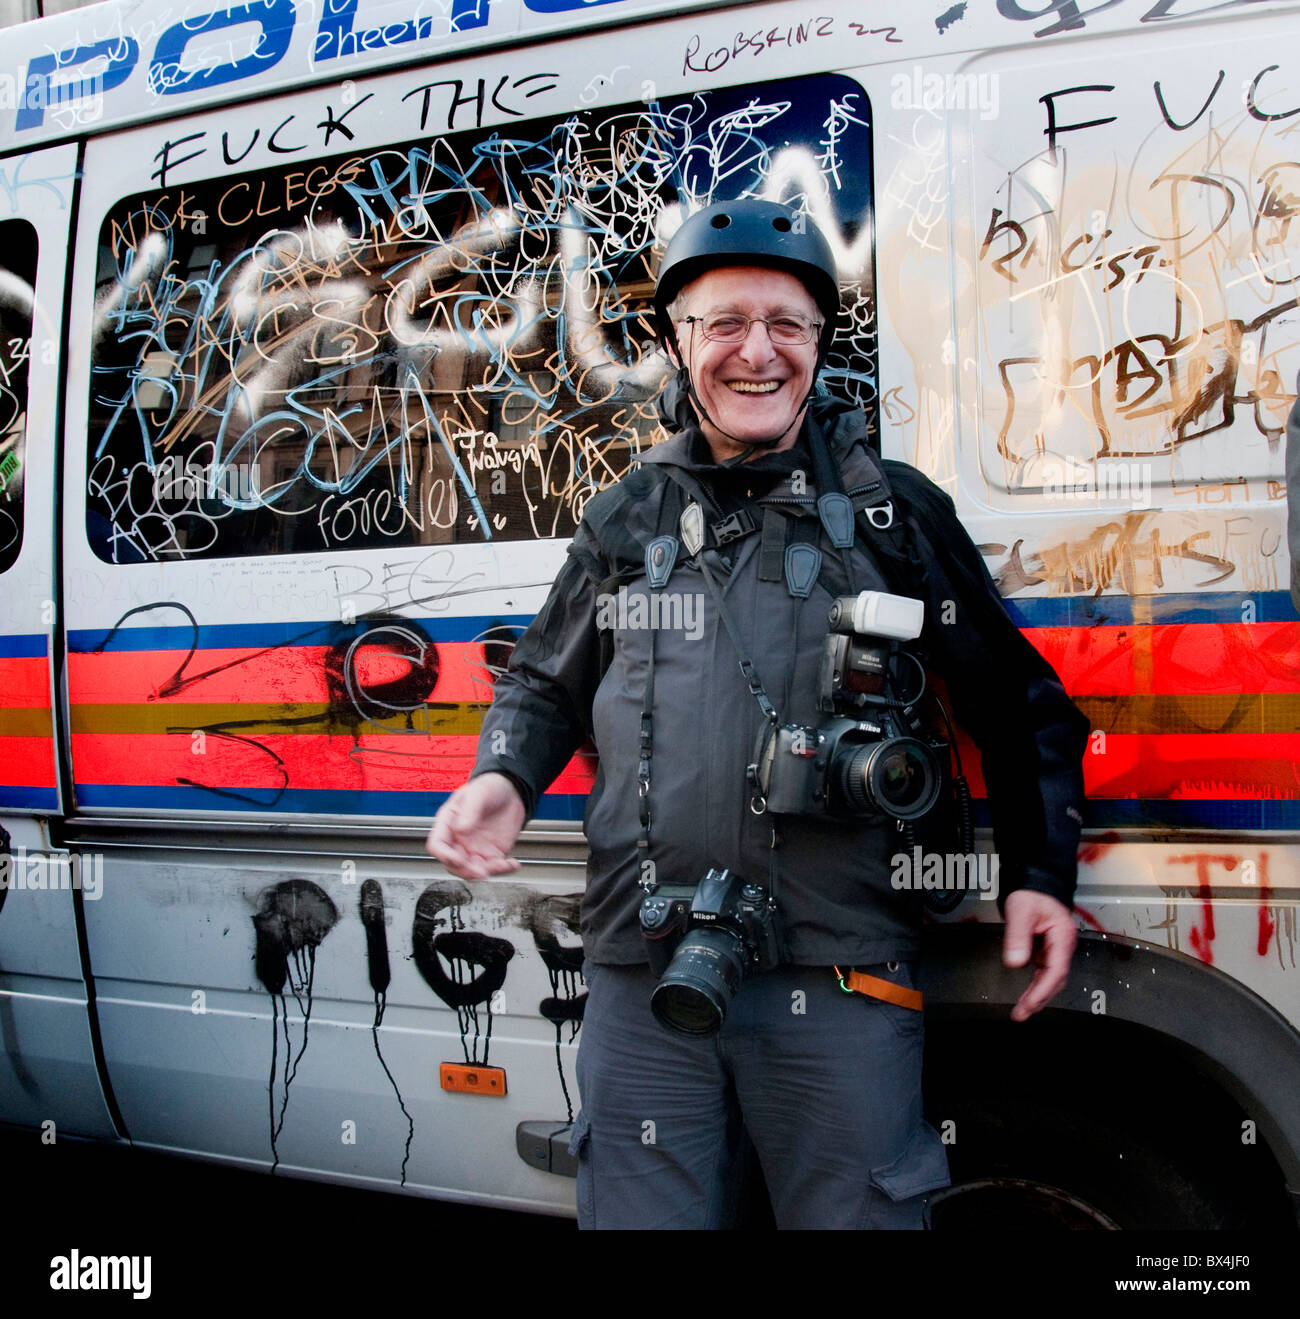 Fotografo e fotoreporter David Hoffman alla protesta degli studenti sulle tasse Londra 24.11.10 Foto Stock